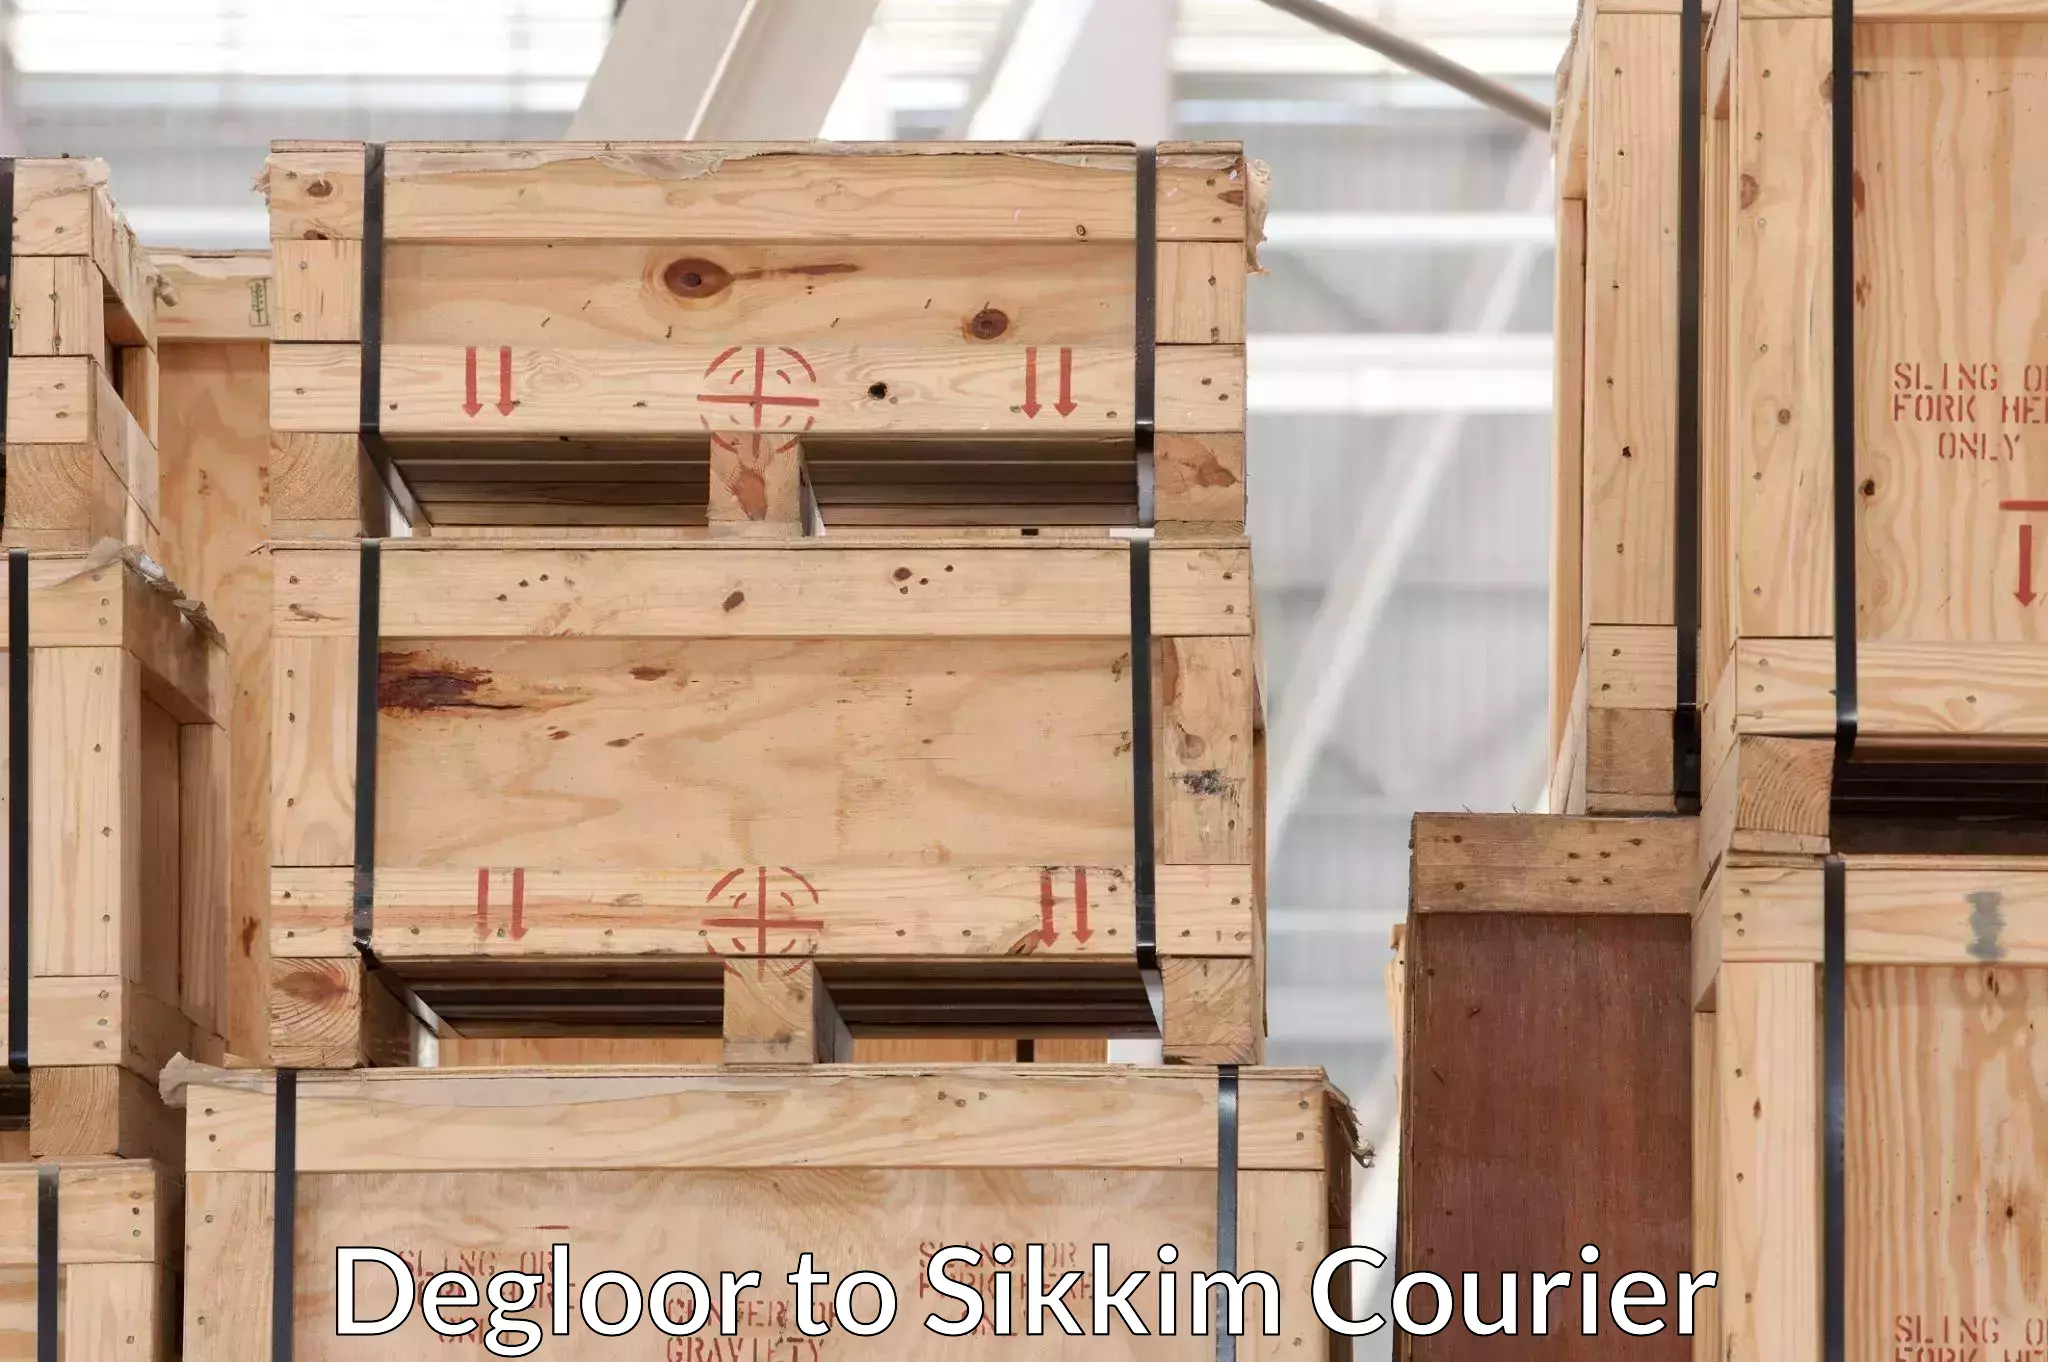 Skilled furniture transport Degloor to Ranipool